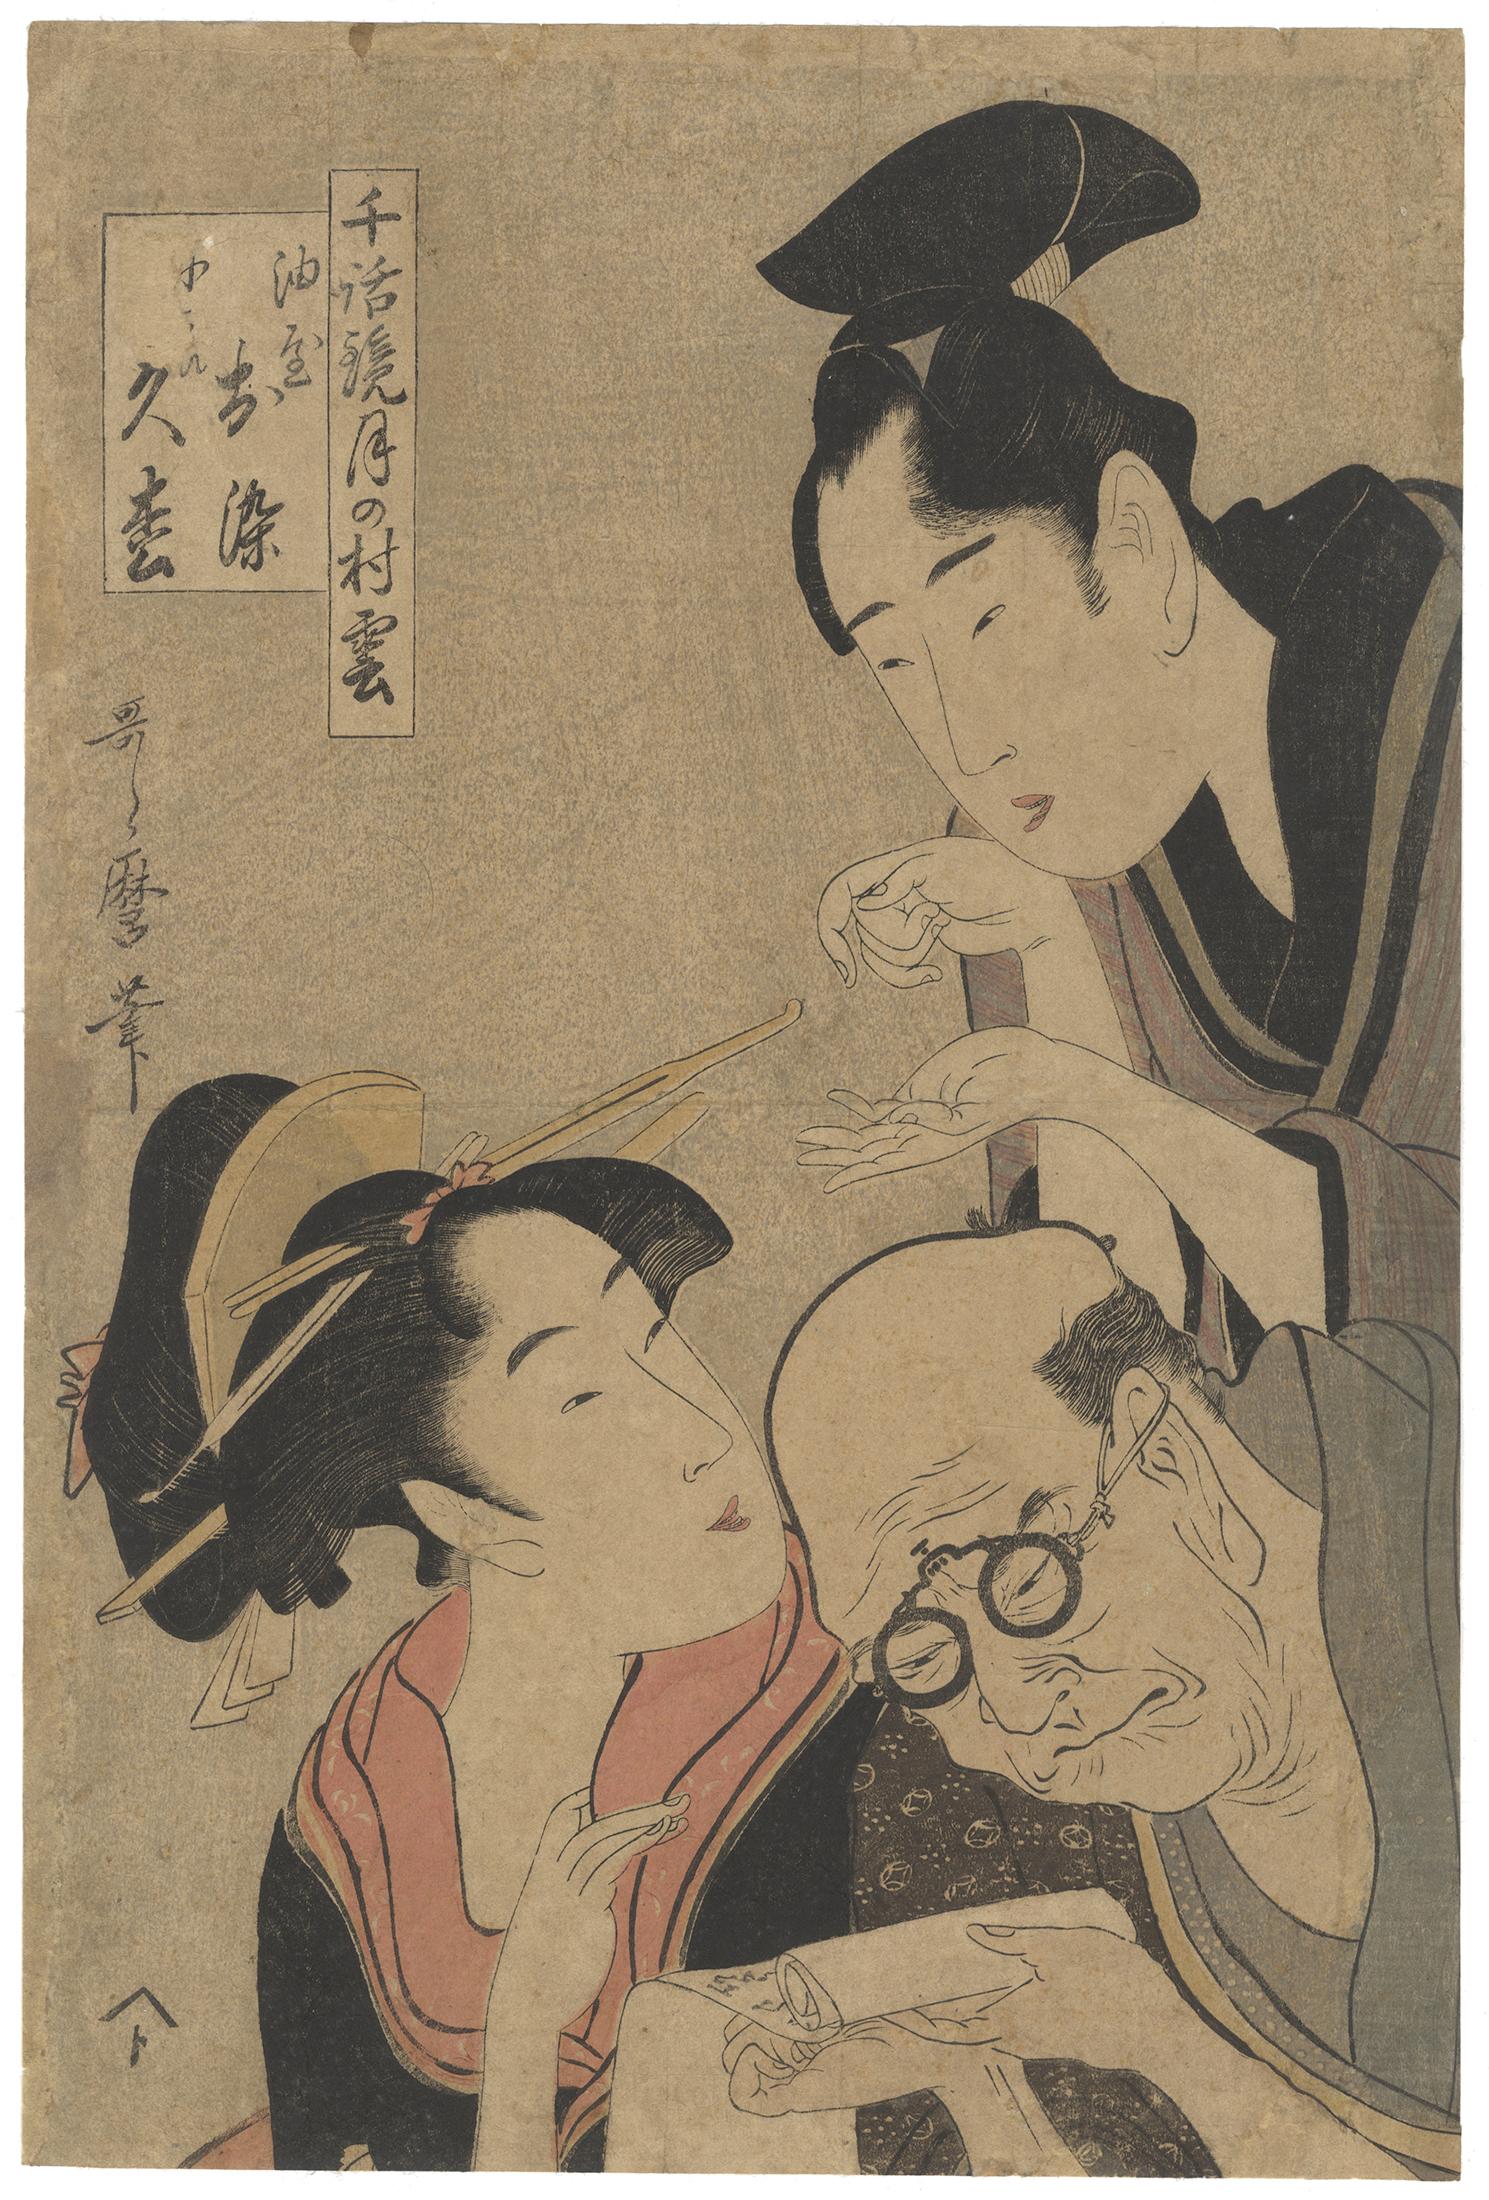 Kitagawa Utamaro Portrait Print - Utamaro I Kitagawa, Ukiyo-e, Japanese Woodblock Print, Kimono, Edo, Lovers